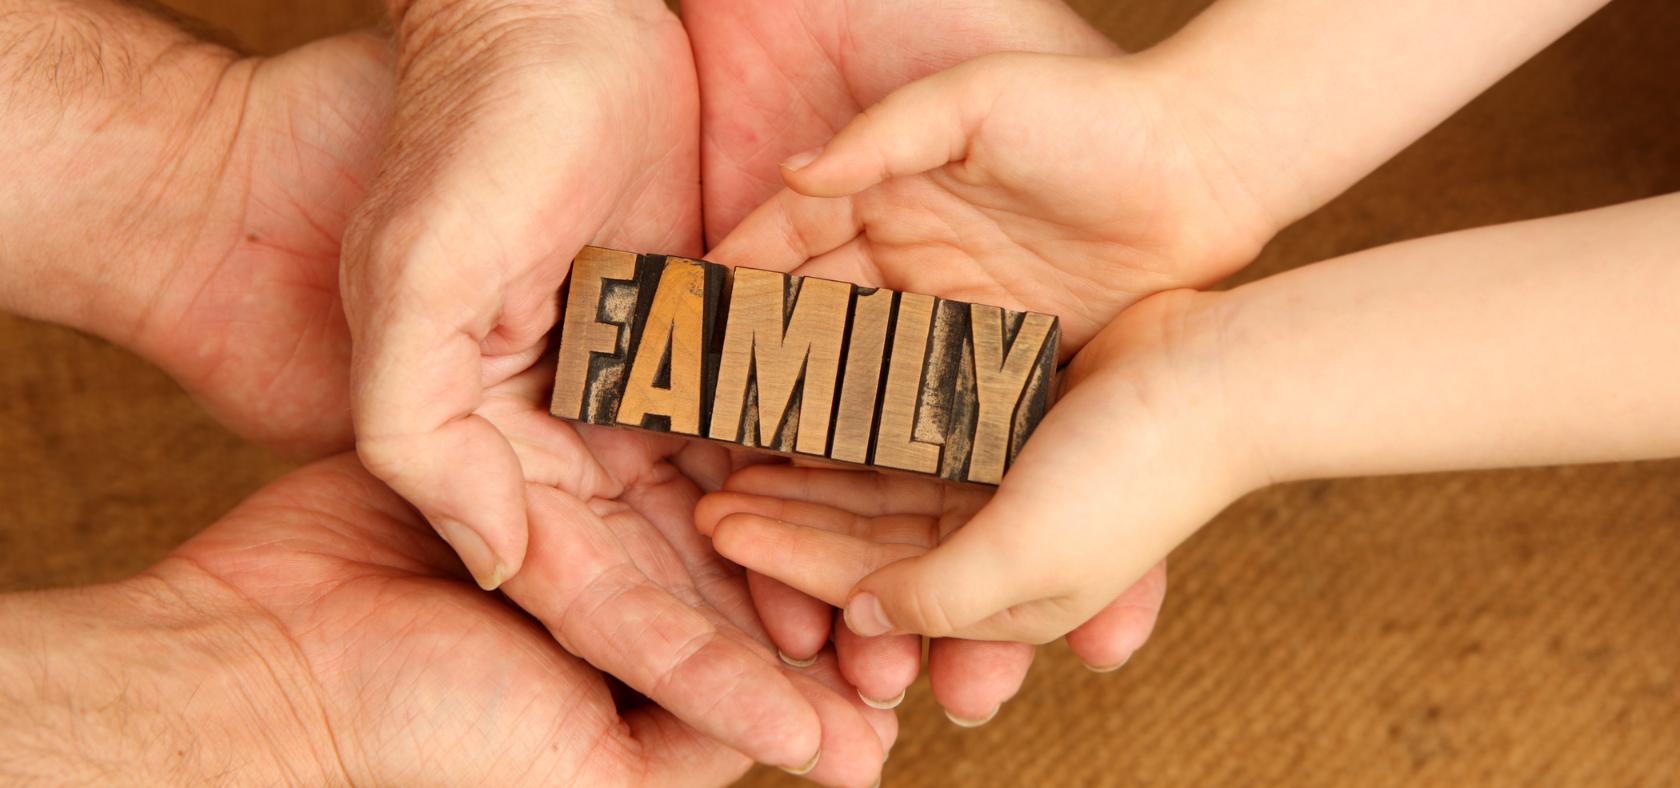 Verschiedene Hände die das Wort "FAMILY" halten